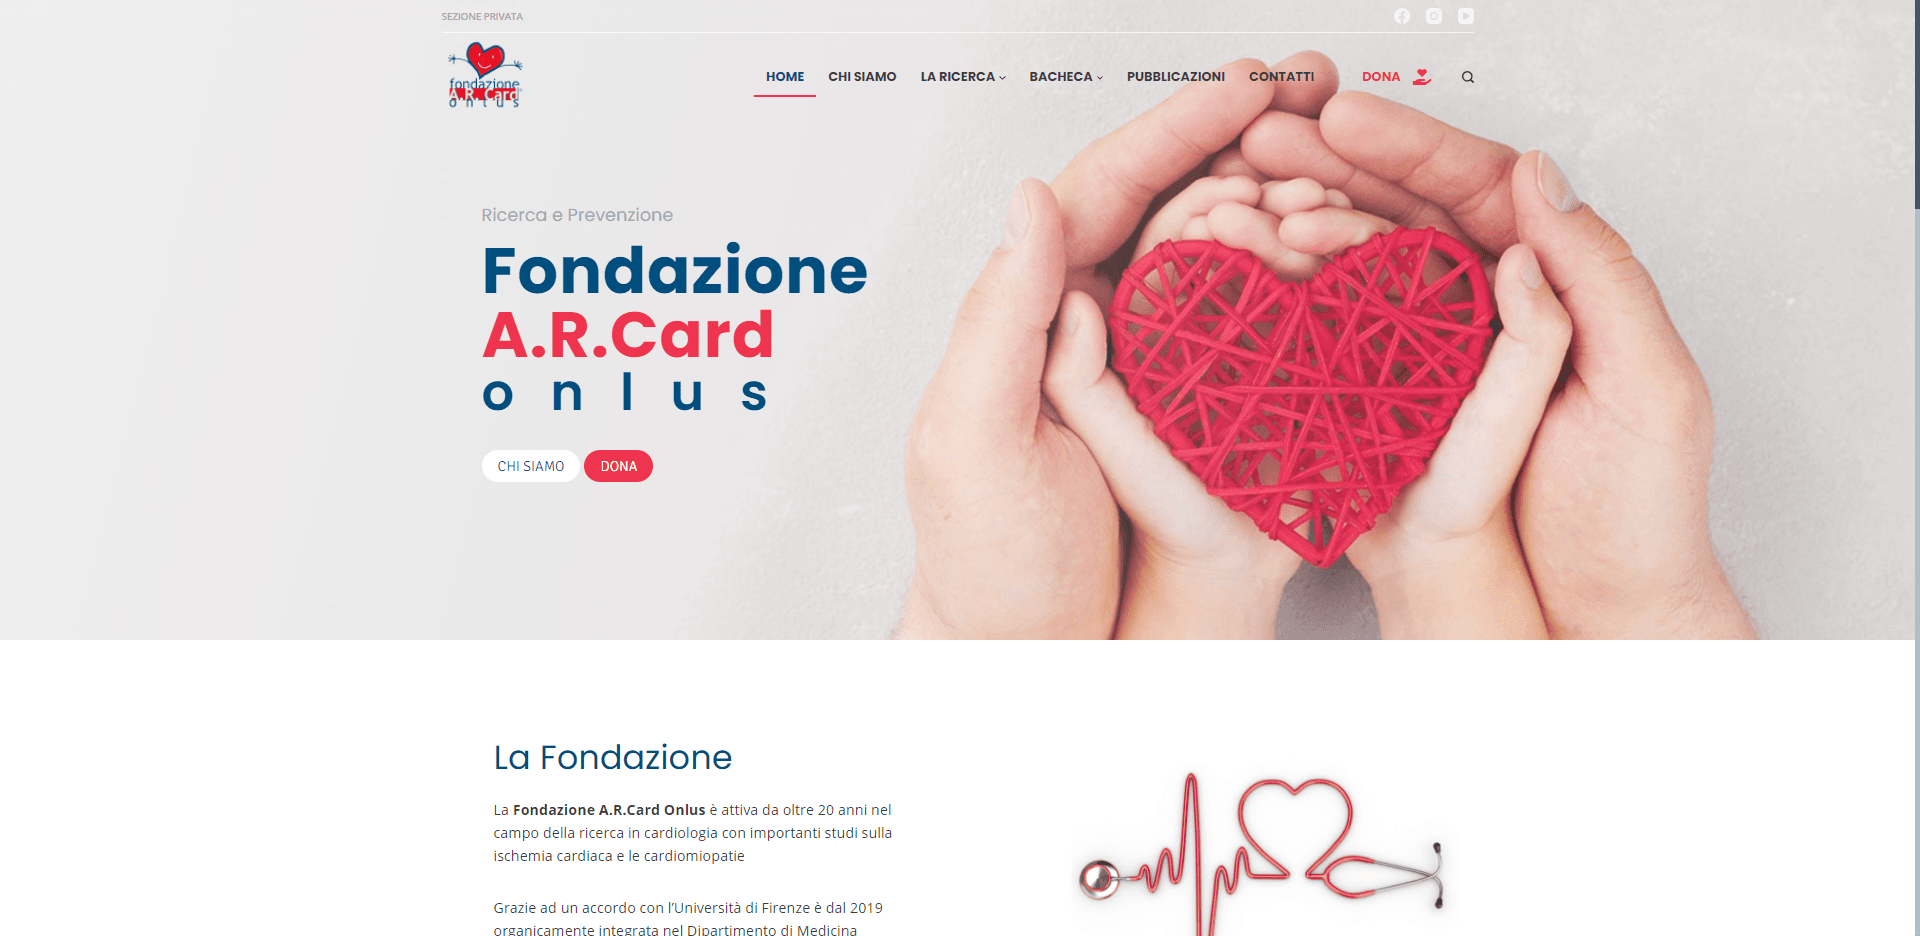 Fondazione Arcard Onlus